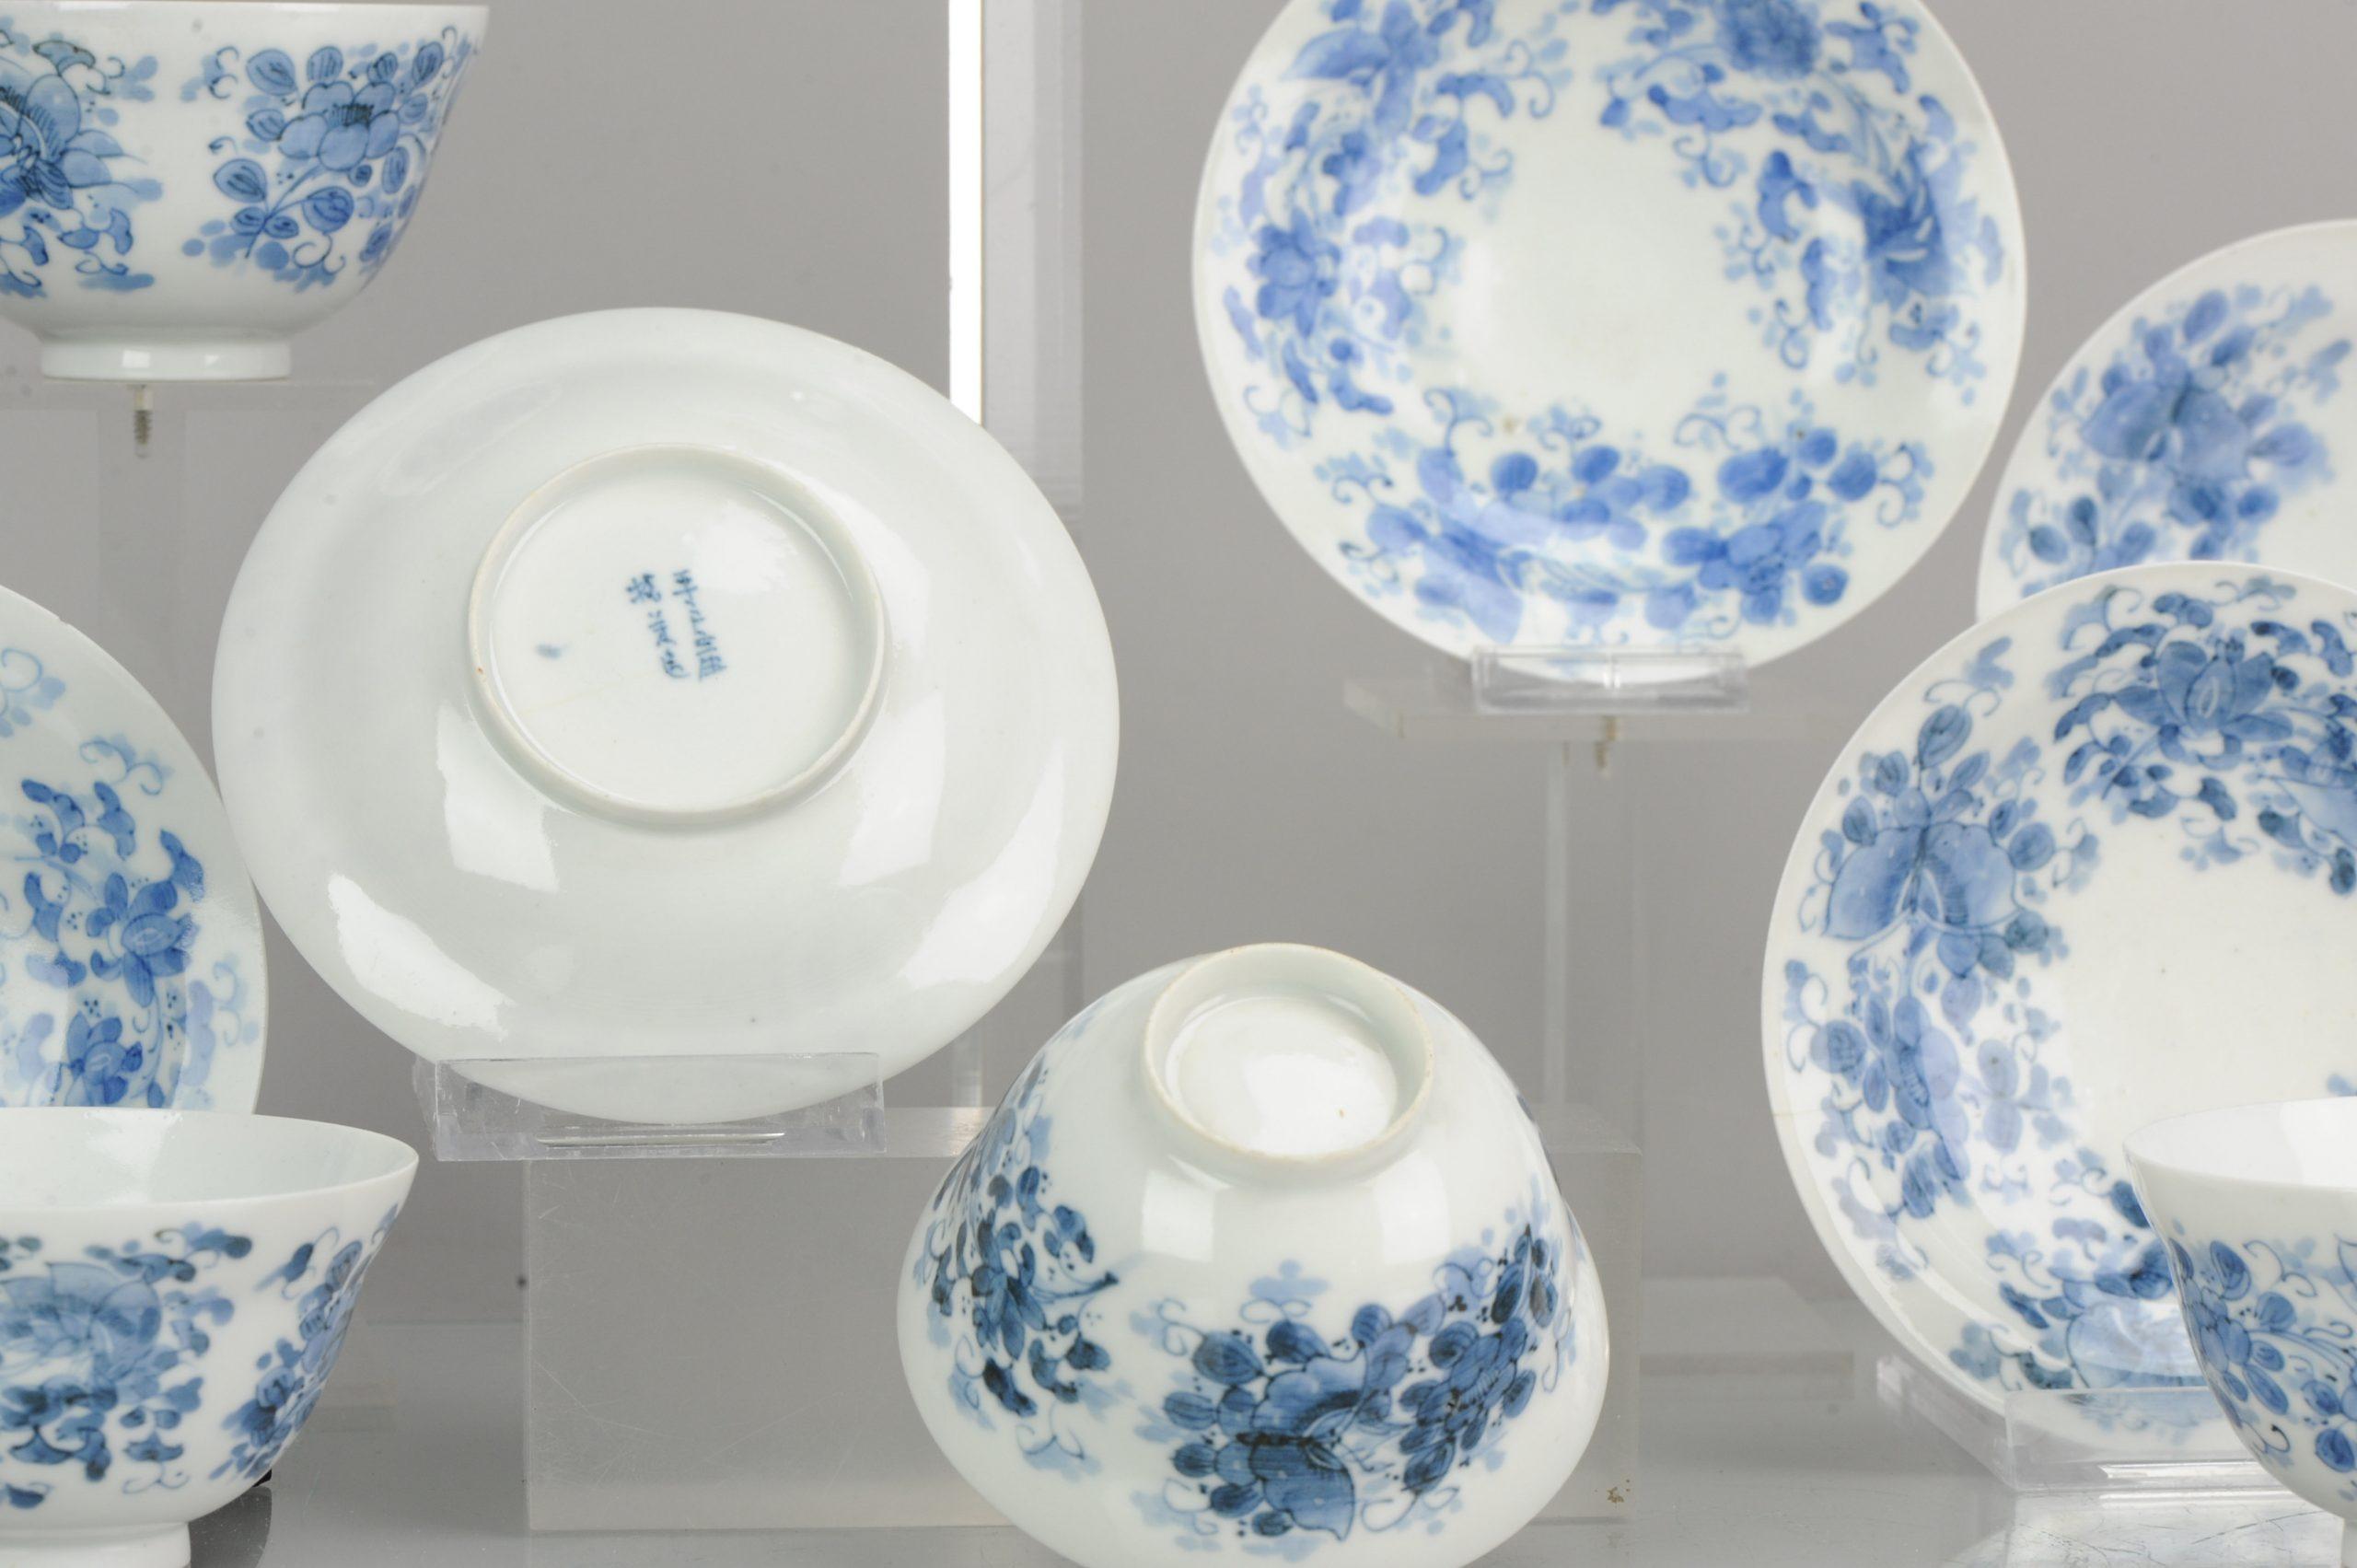 Ein sehr schönes und seltenes Set von blau-weißen Teekannen, MARKIERT. Japanisch im chinesischen Stil. Beste Qualität

Zusätzliche Informationen:
MATERIAL: Porzellan & Töpferei
Herkunftsregion: Japan
Zeitraum: 19. Jahrhundert
Alter: vor 1800